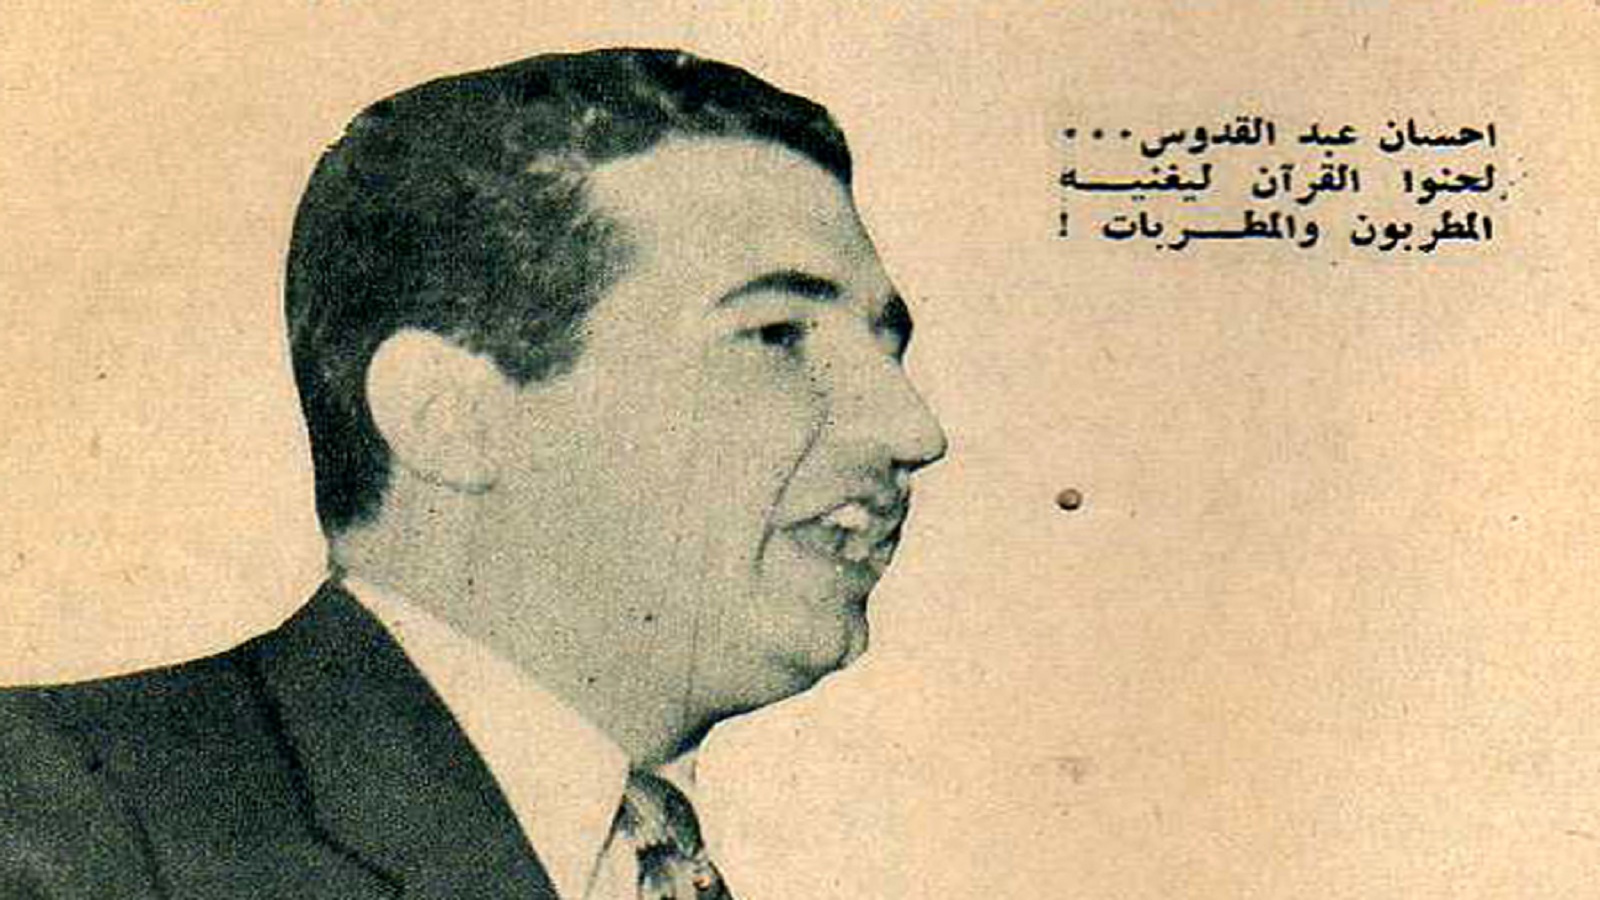  إحسان عبد القدوس: "لحنوا القرآن ليغنيه المطربون والمطربات"، 1957.